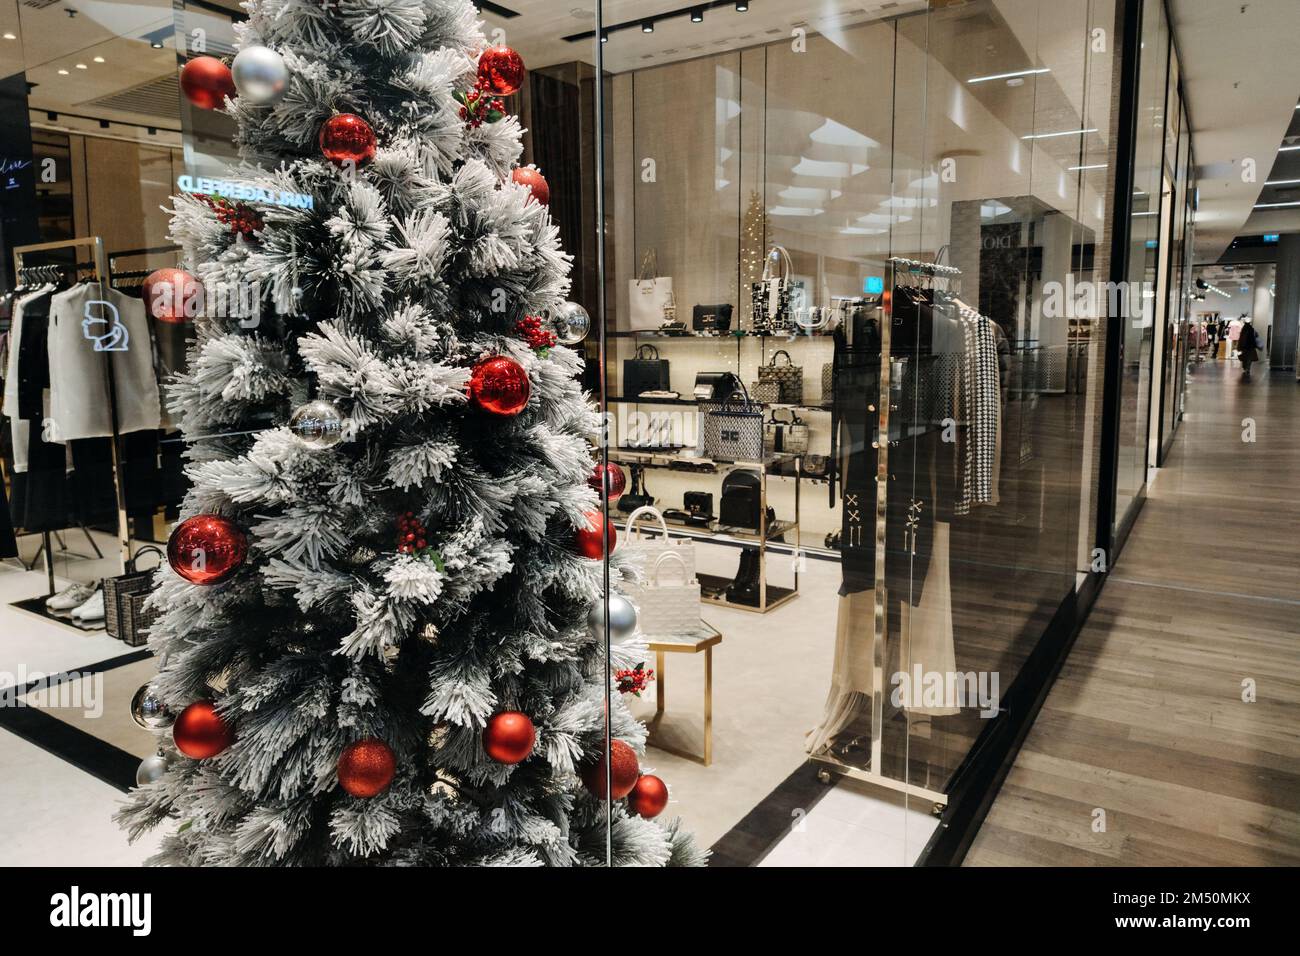 Weihnachts-Winterverkauf im Einkaufszentrum, Einkaufszentrum. Silvester- und Weihnachtsdekorationen im großen Einkaufszentrum mit Geschäften. Warschau, Polen - Dezember 02 Stockfoto